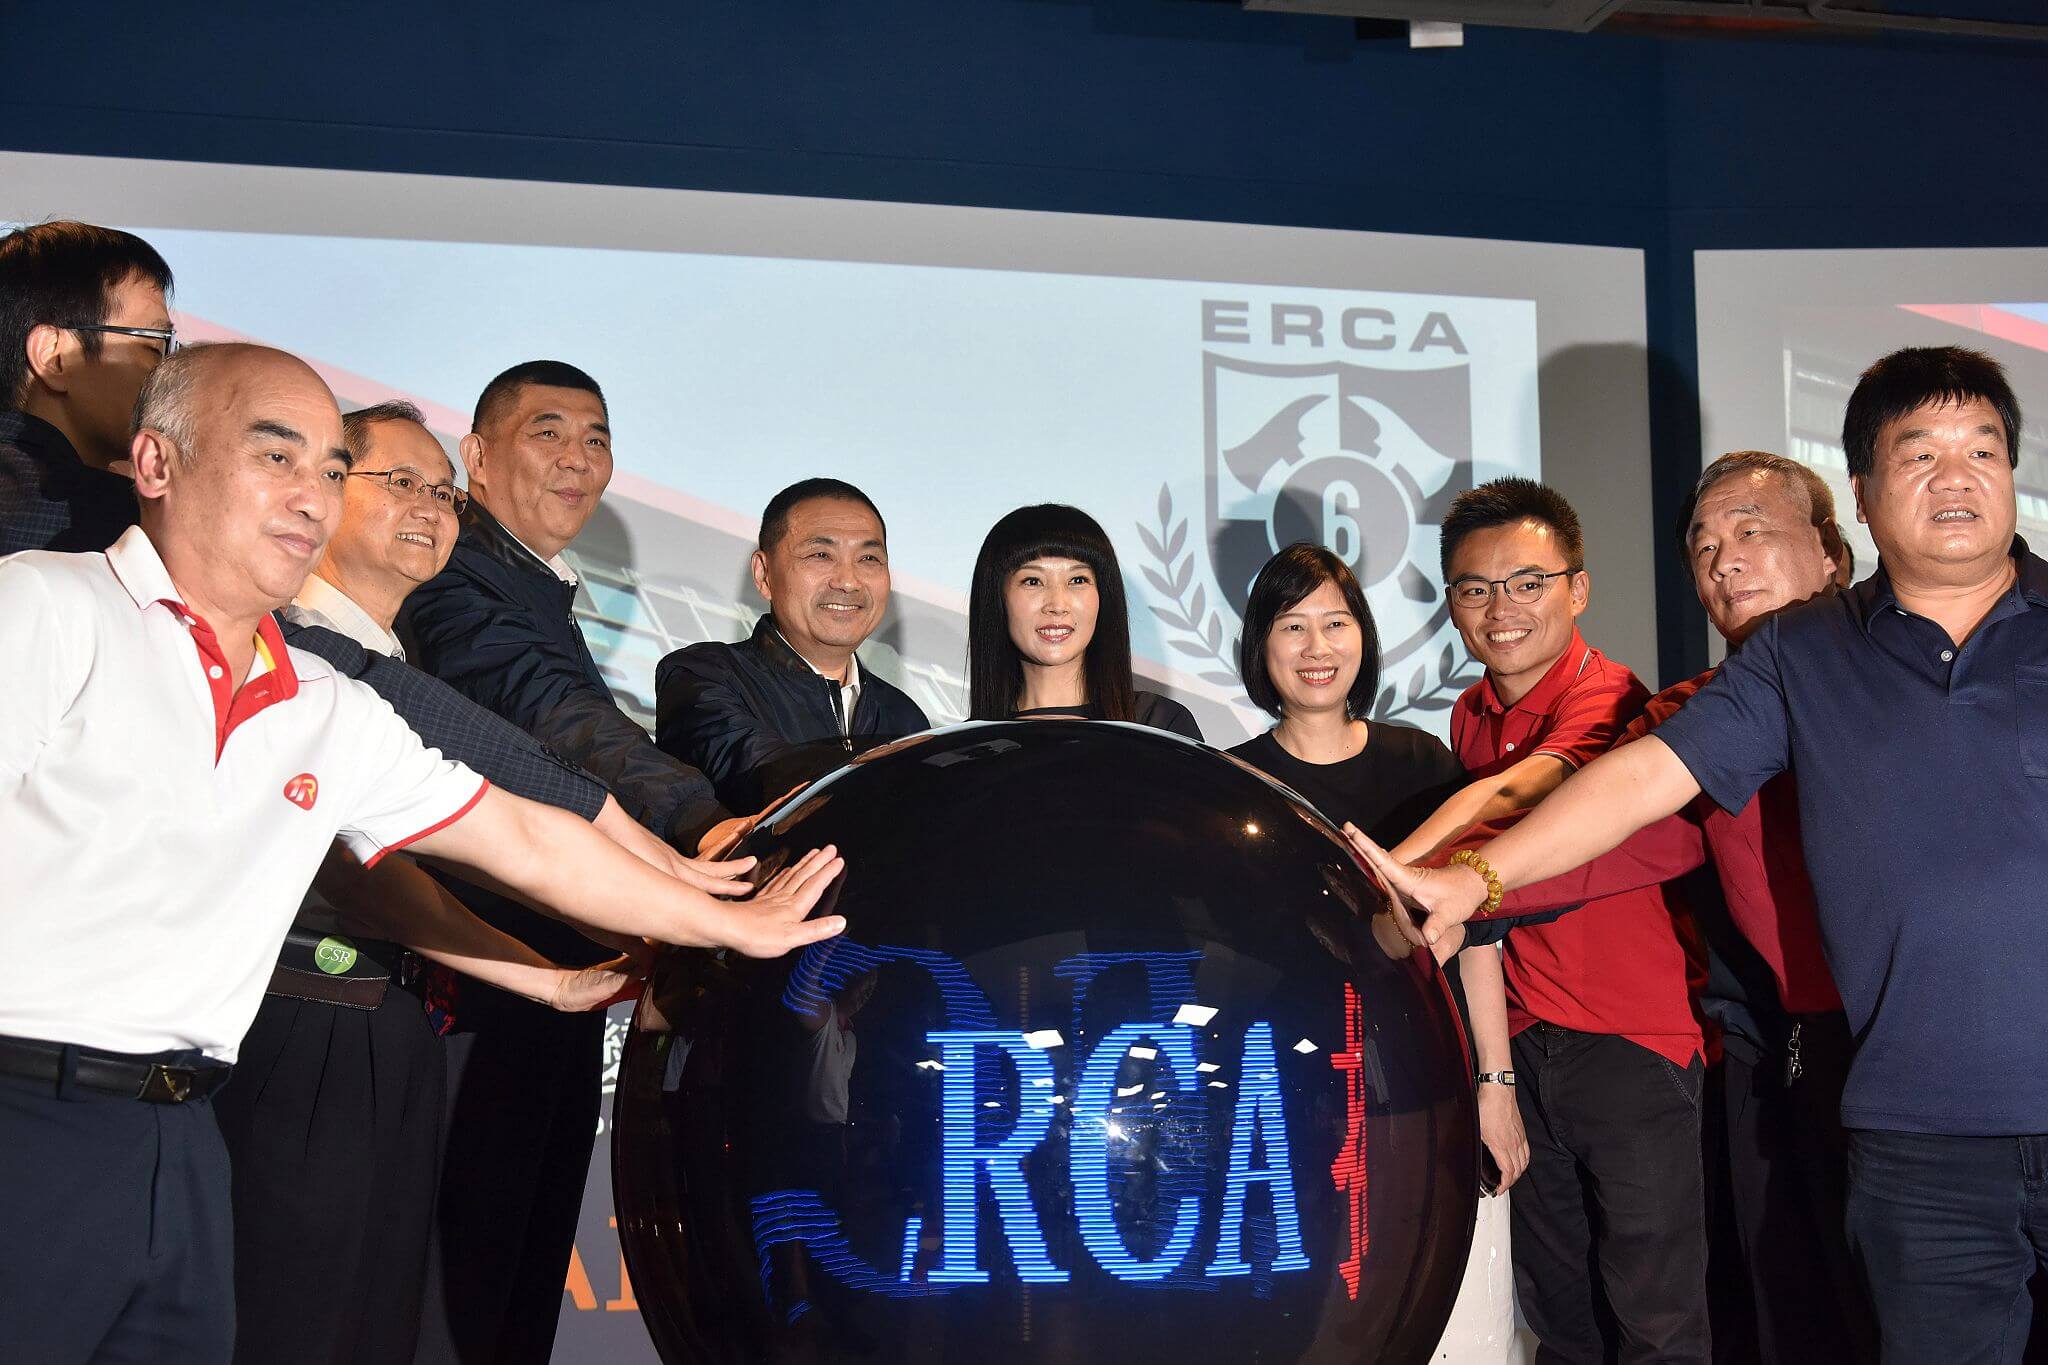 全國首創ERCA揭牌啟用 1